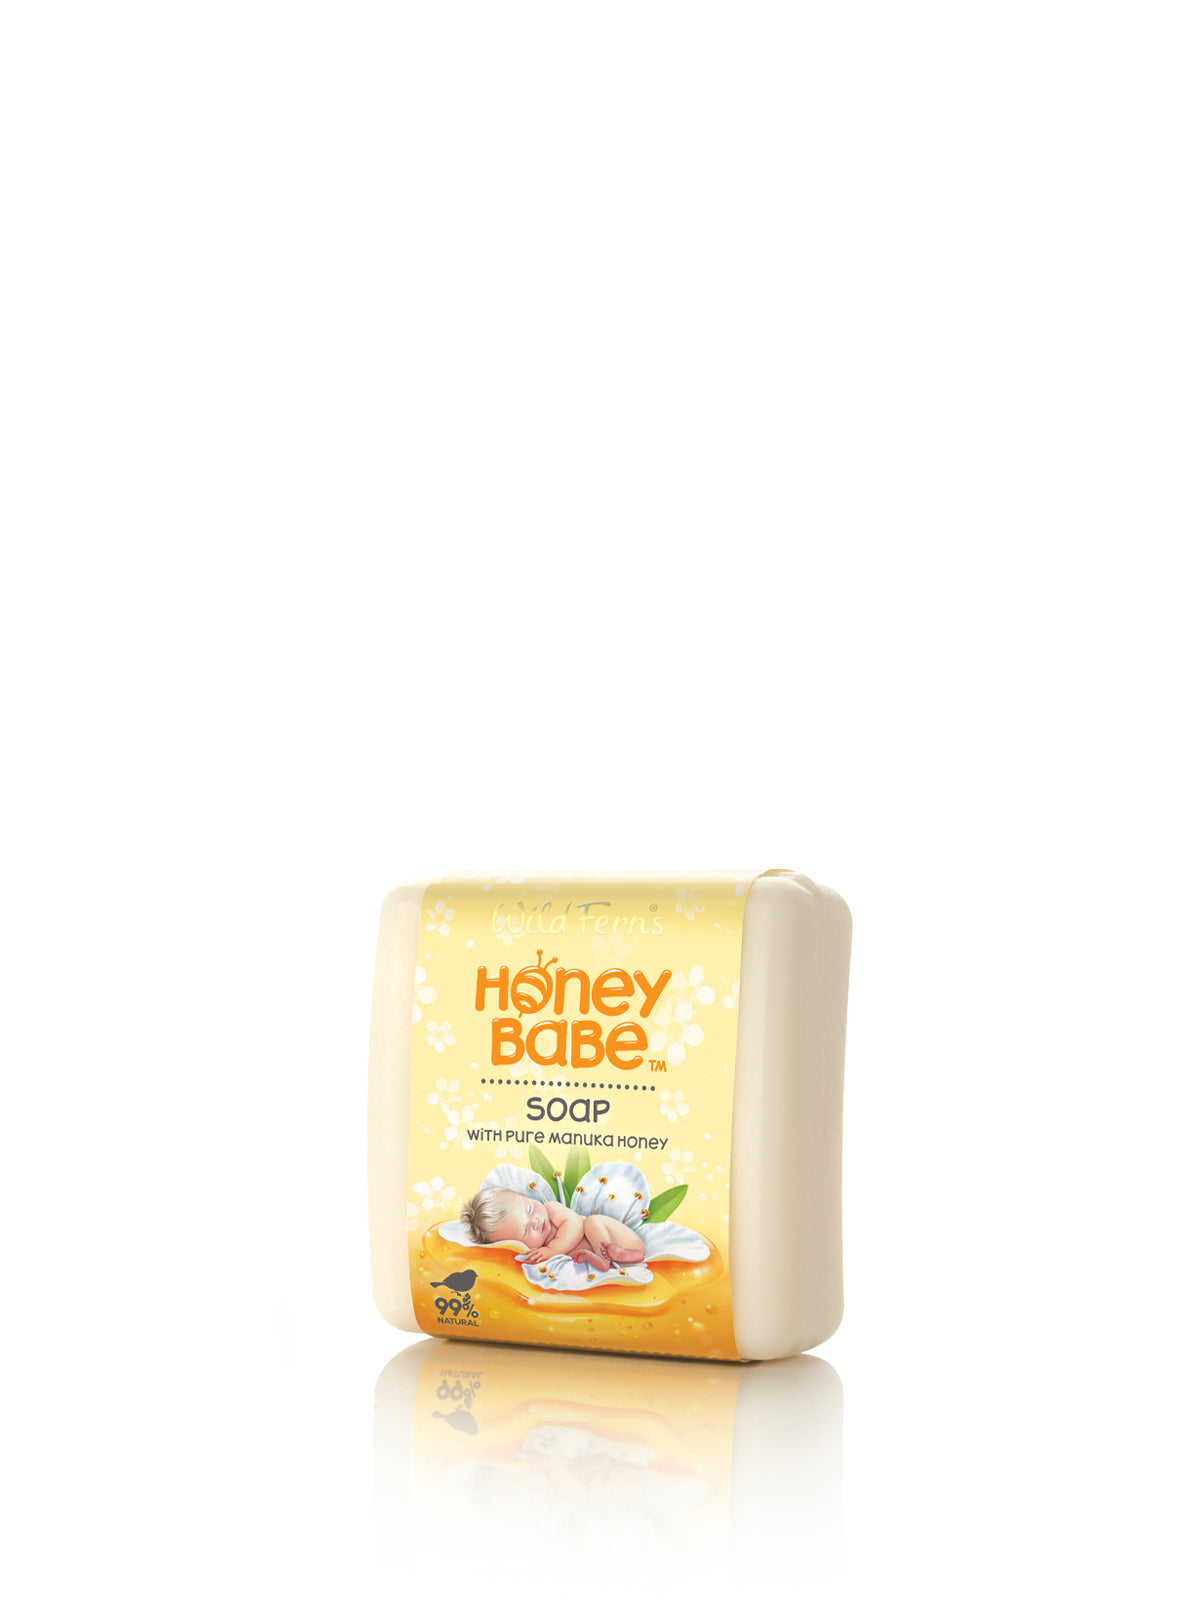 Honey Babe Soap with Manuka Honey, 100 g